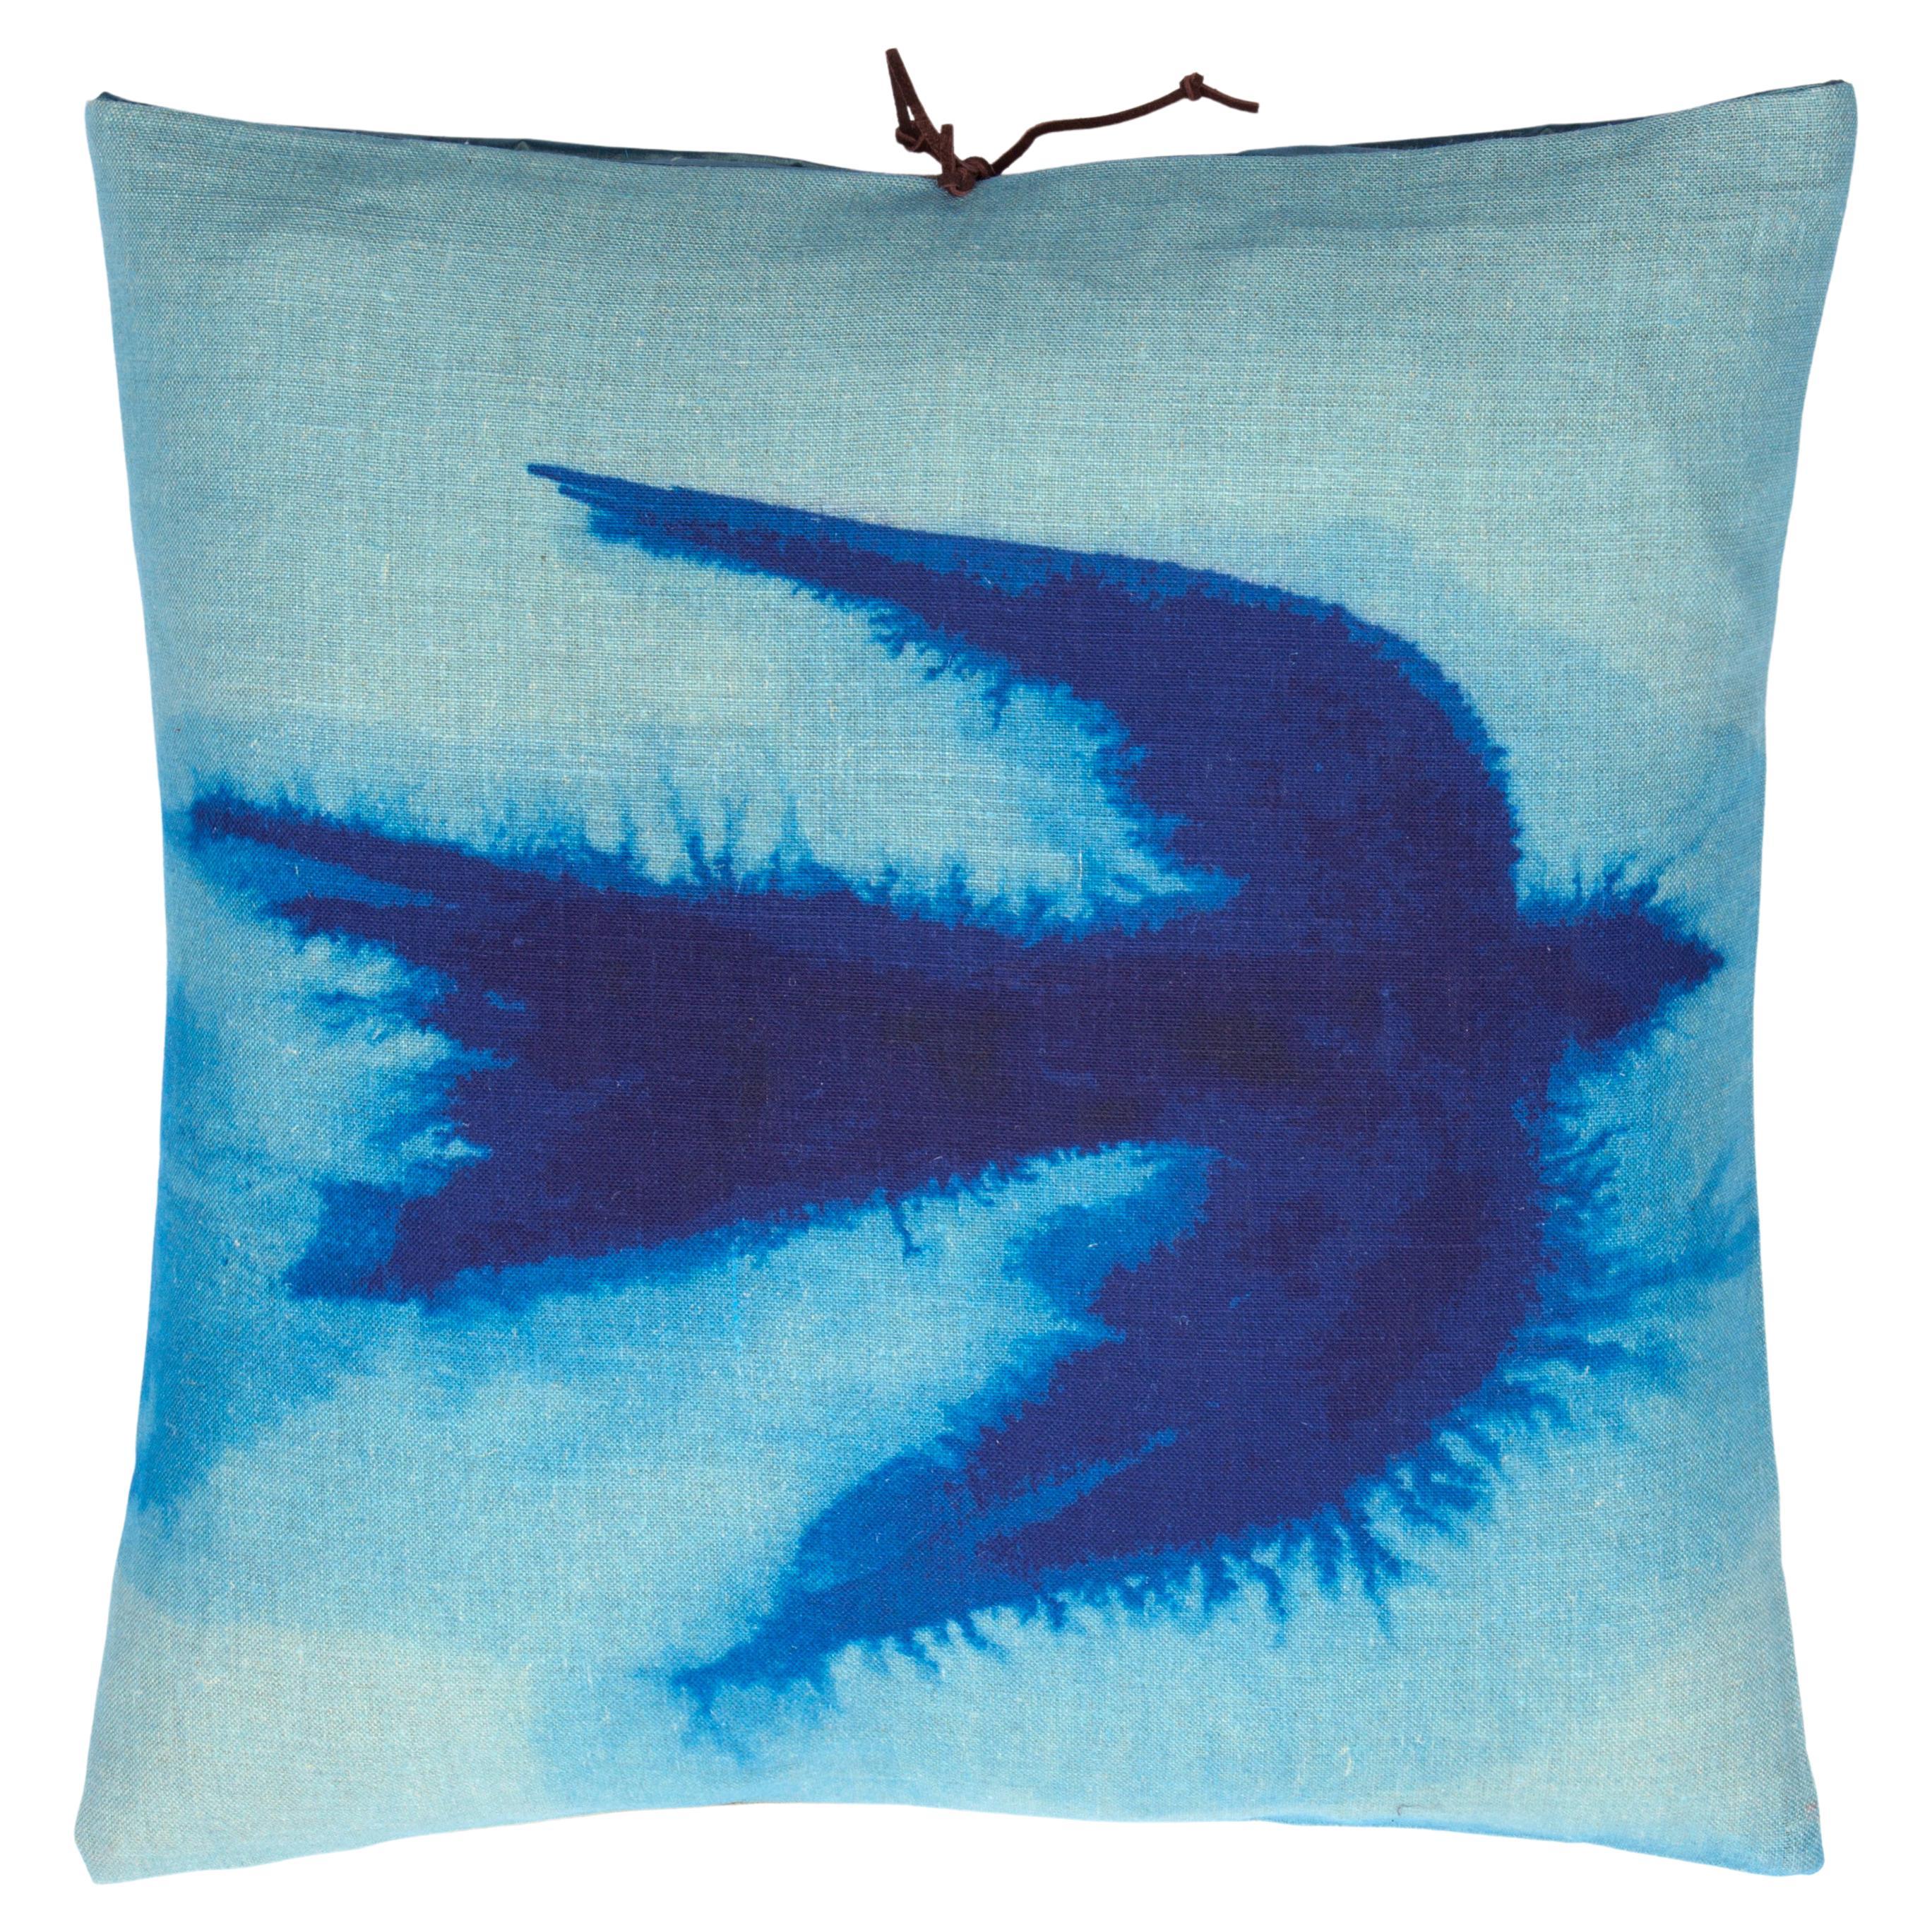 Printed Linen Throw Pillow Flight Blue